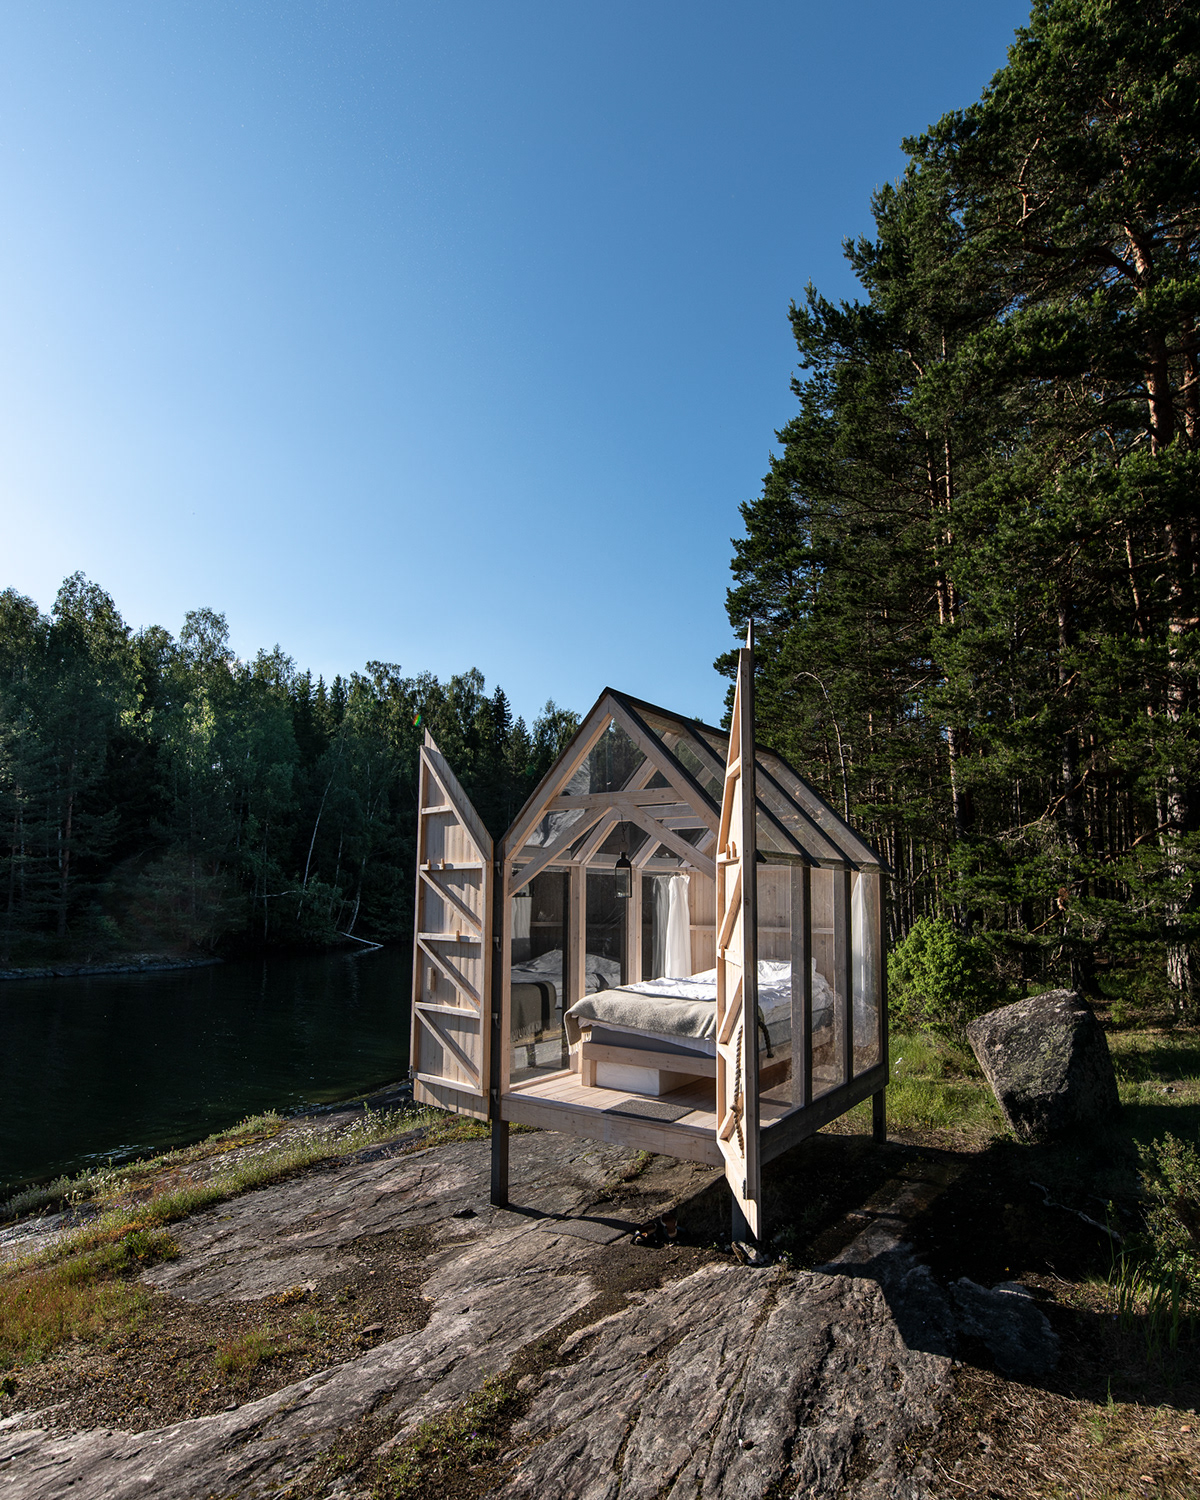 The cabin - 72 Hour Cabin at Henriksholm, Lake Ånimmen in Sweden - photo Martin Kaufmann